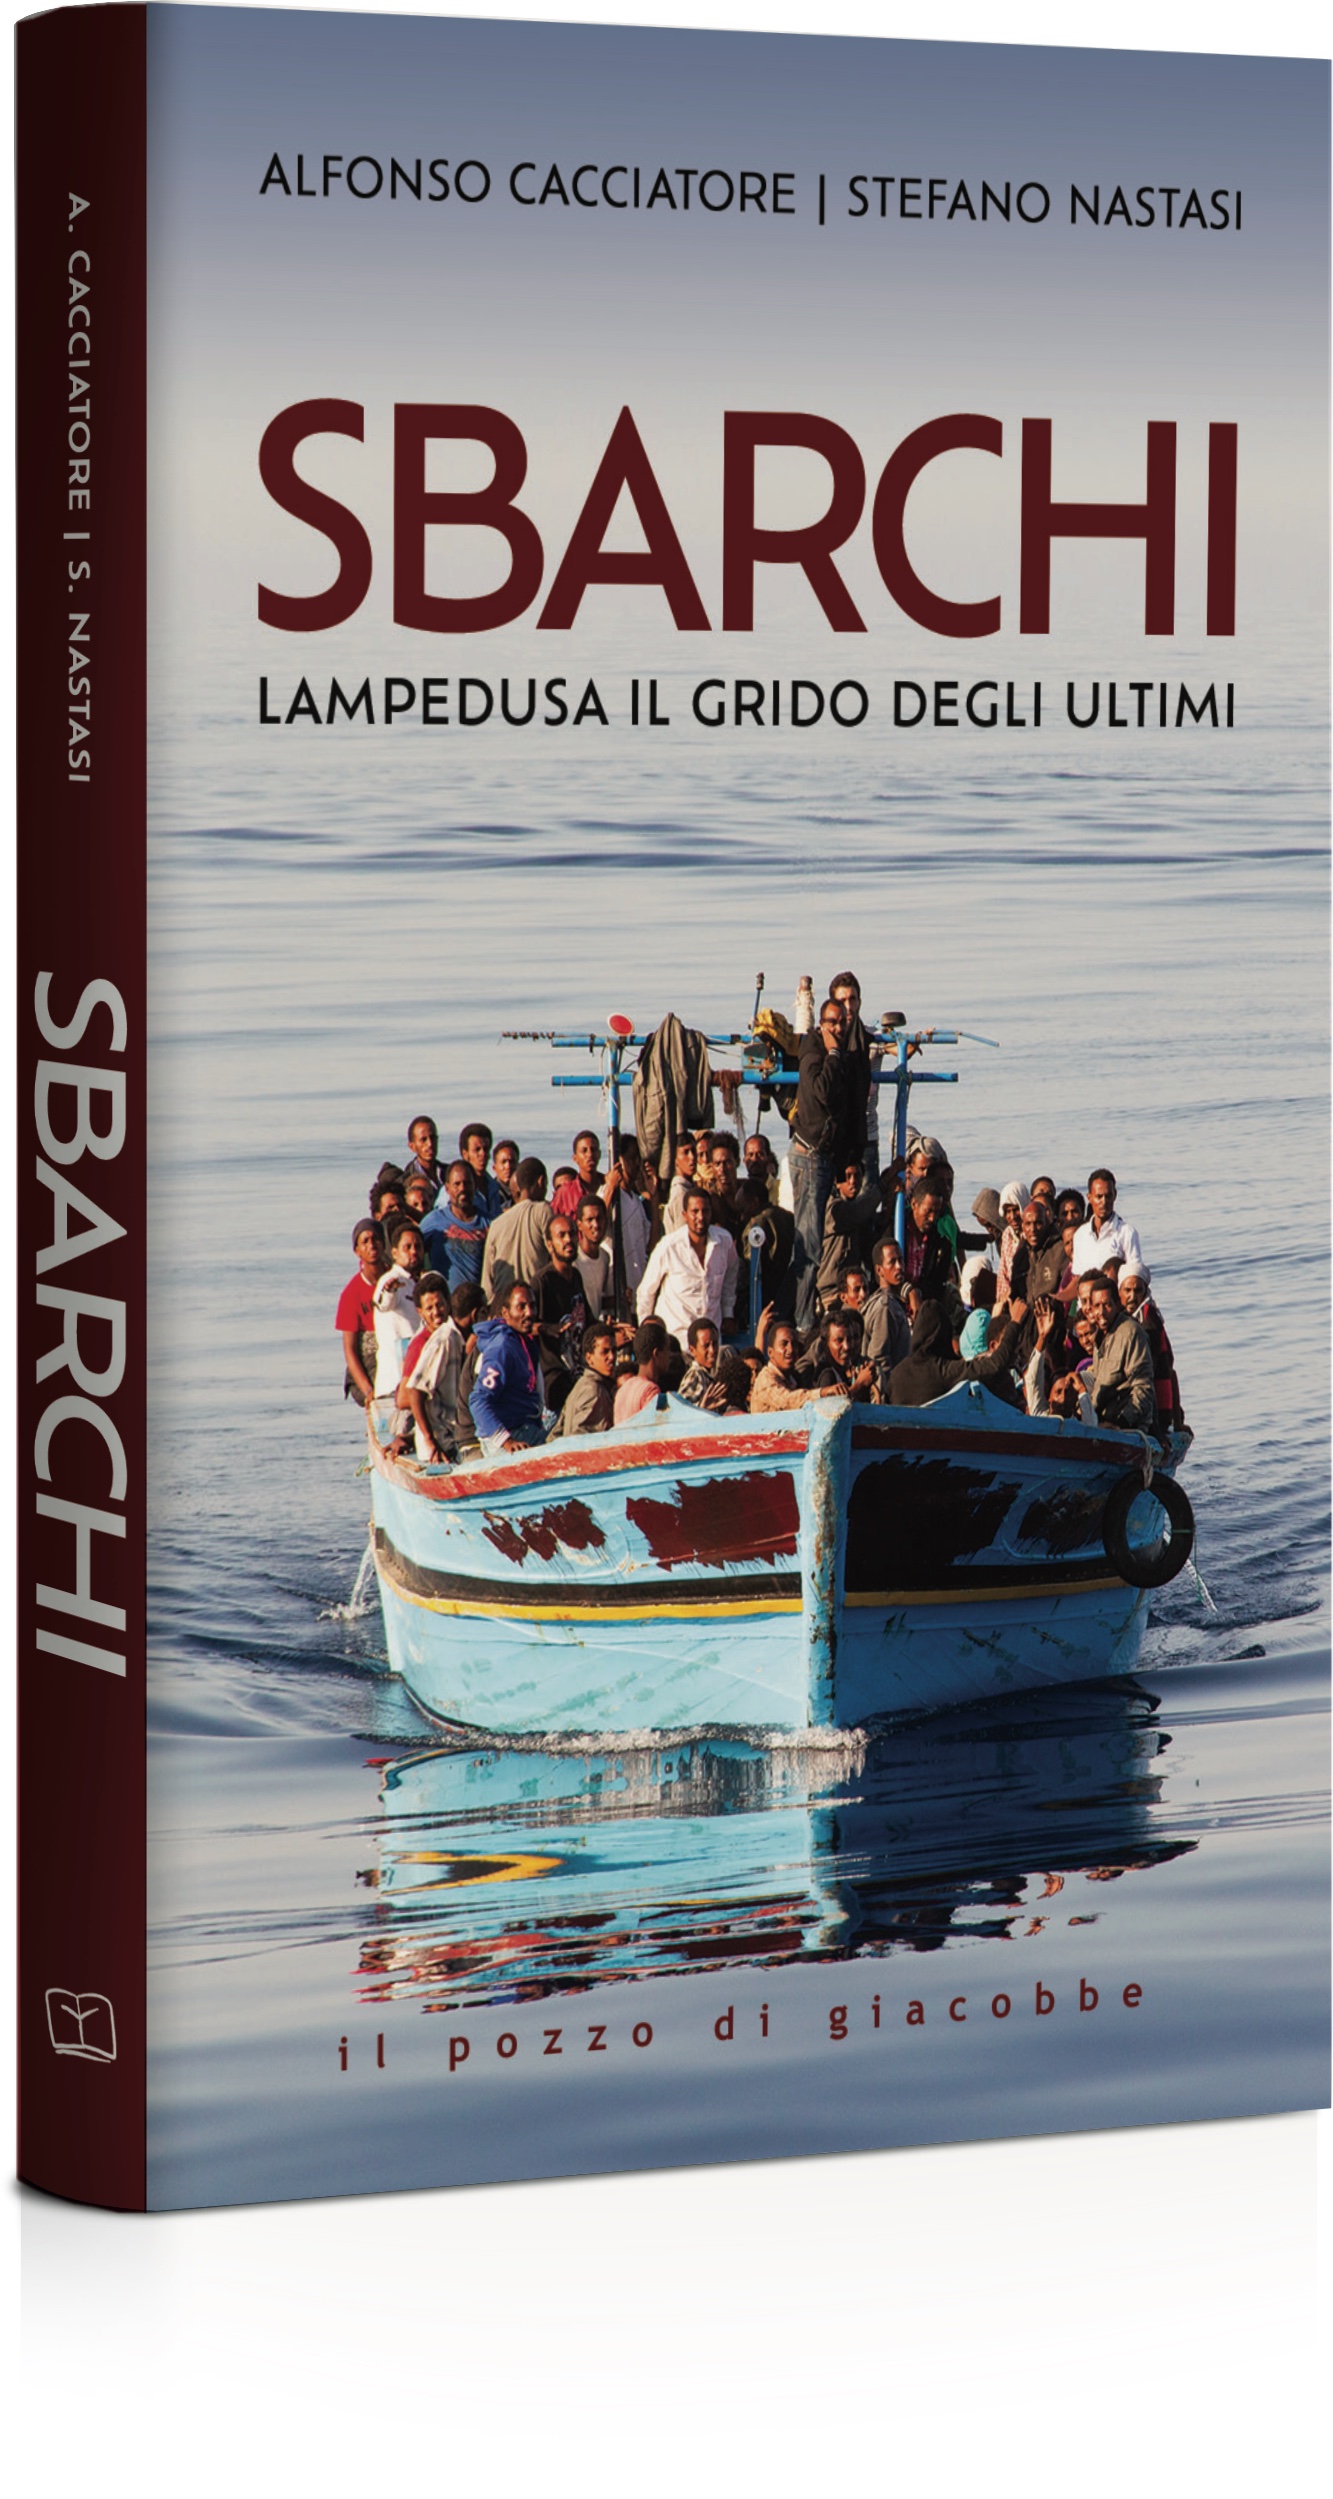 Sbarchi - Lampedusa il grido degli ultimi